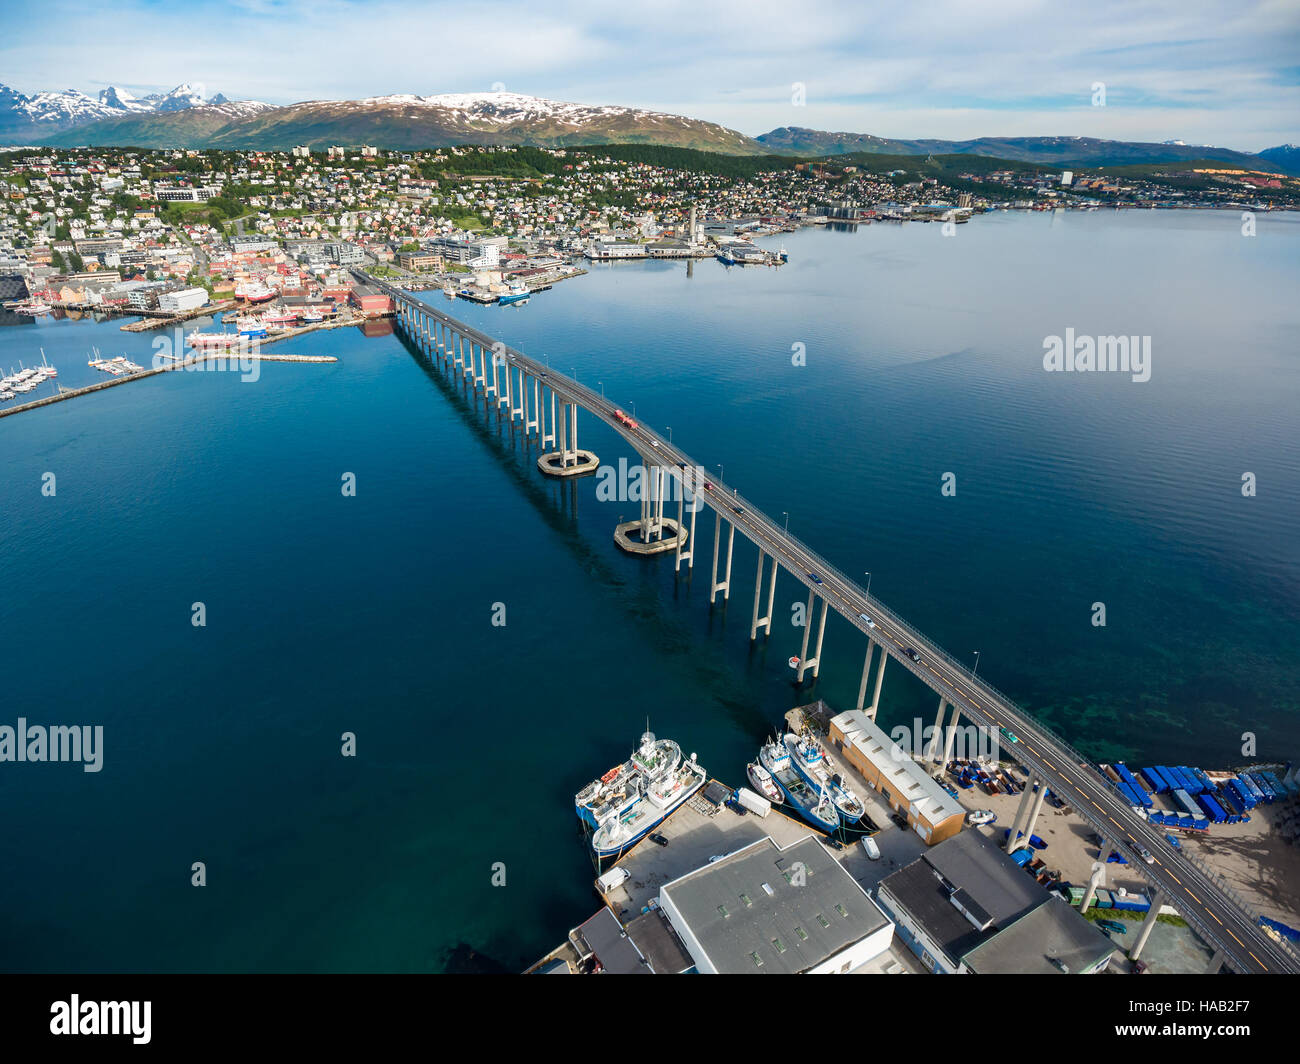 Ponte della città Tromso, Norvegia la fotografia aerea. Tromso è considerata la città più settentrionale del mondo con una popolazione al di sopra di 50.000. Foto Stock